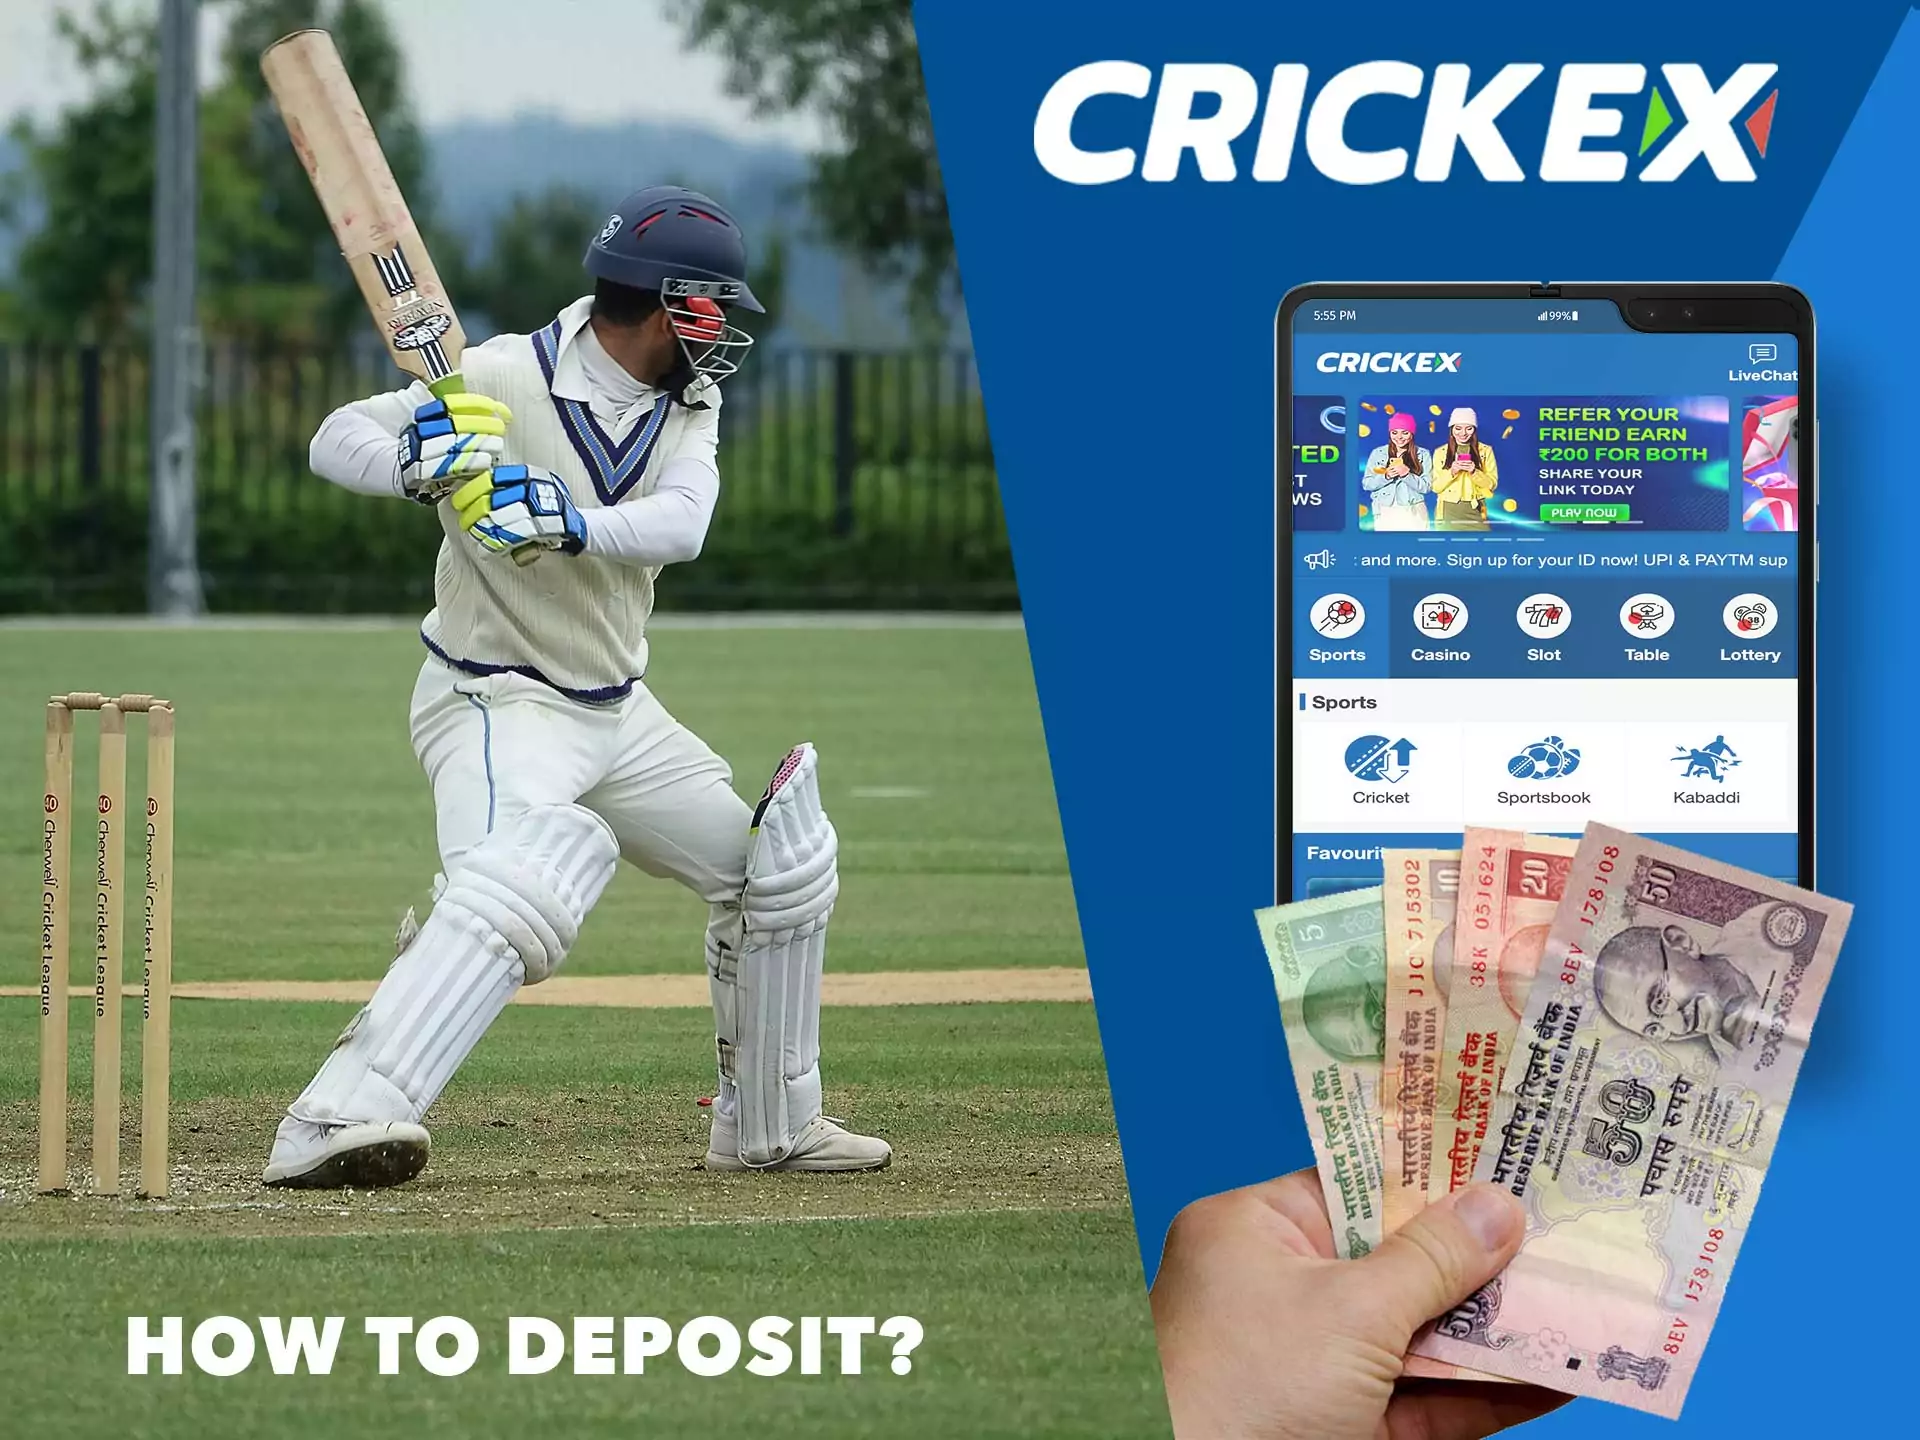 The minimum deposit amount at Crickex is INR 200.